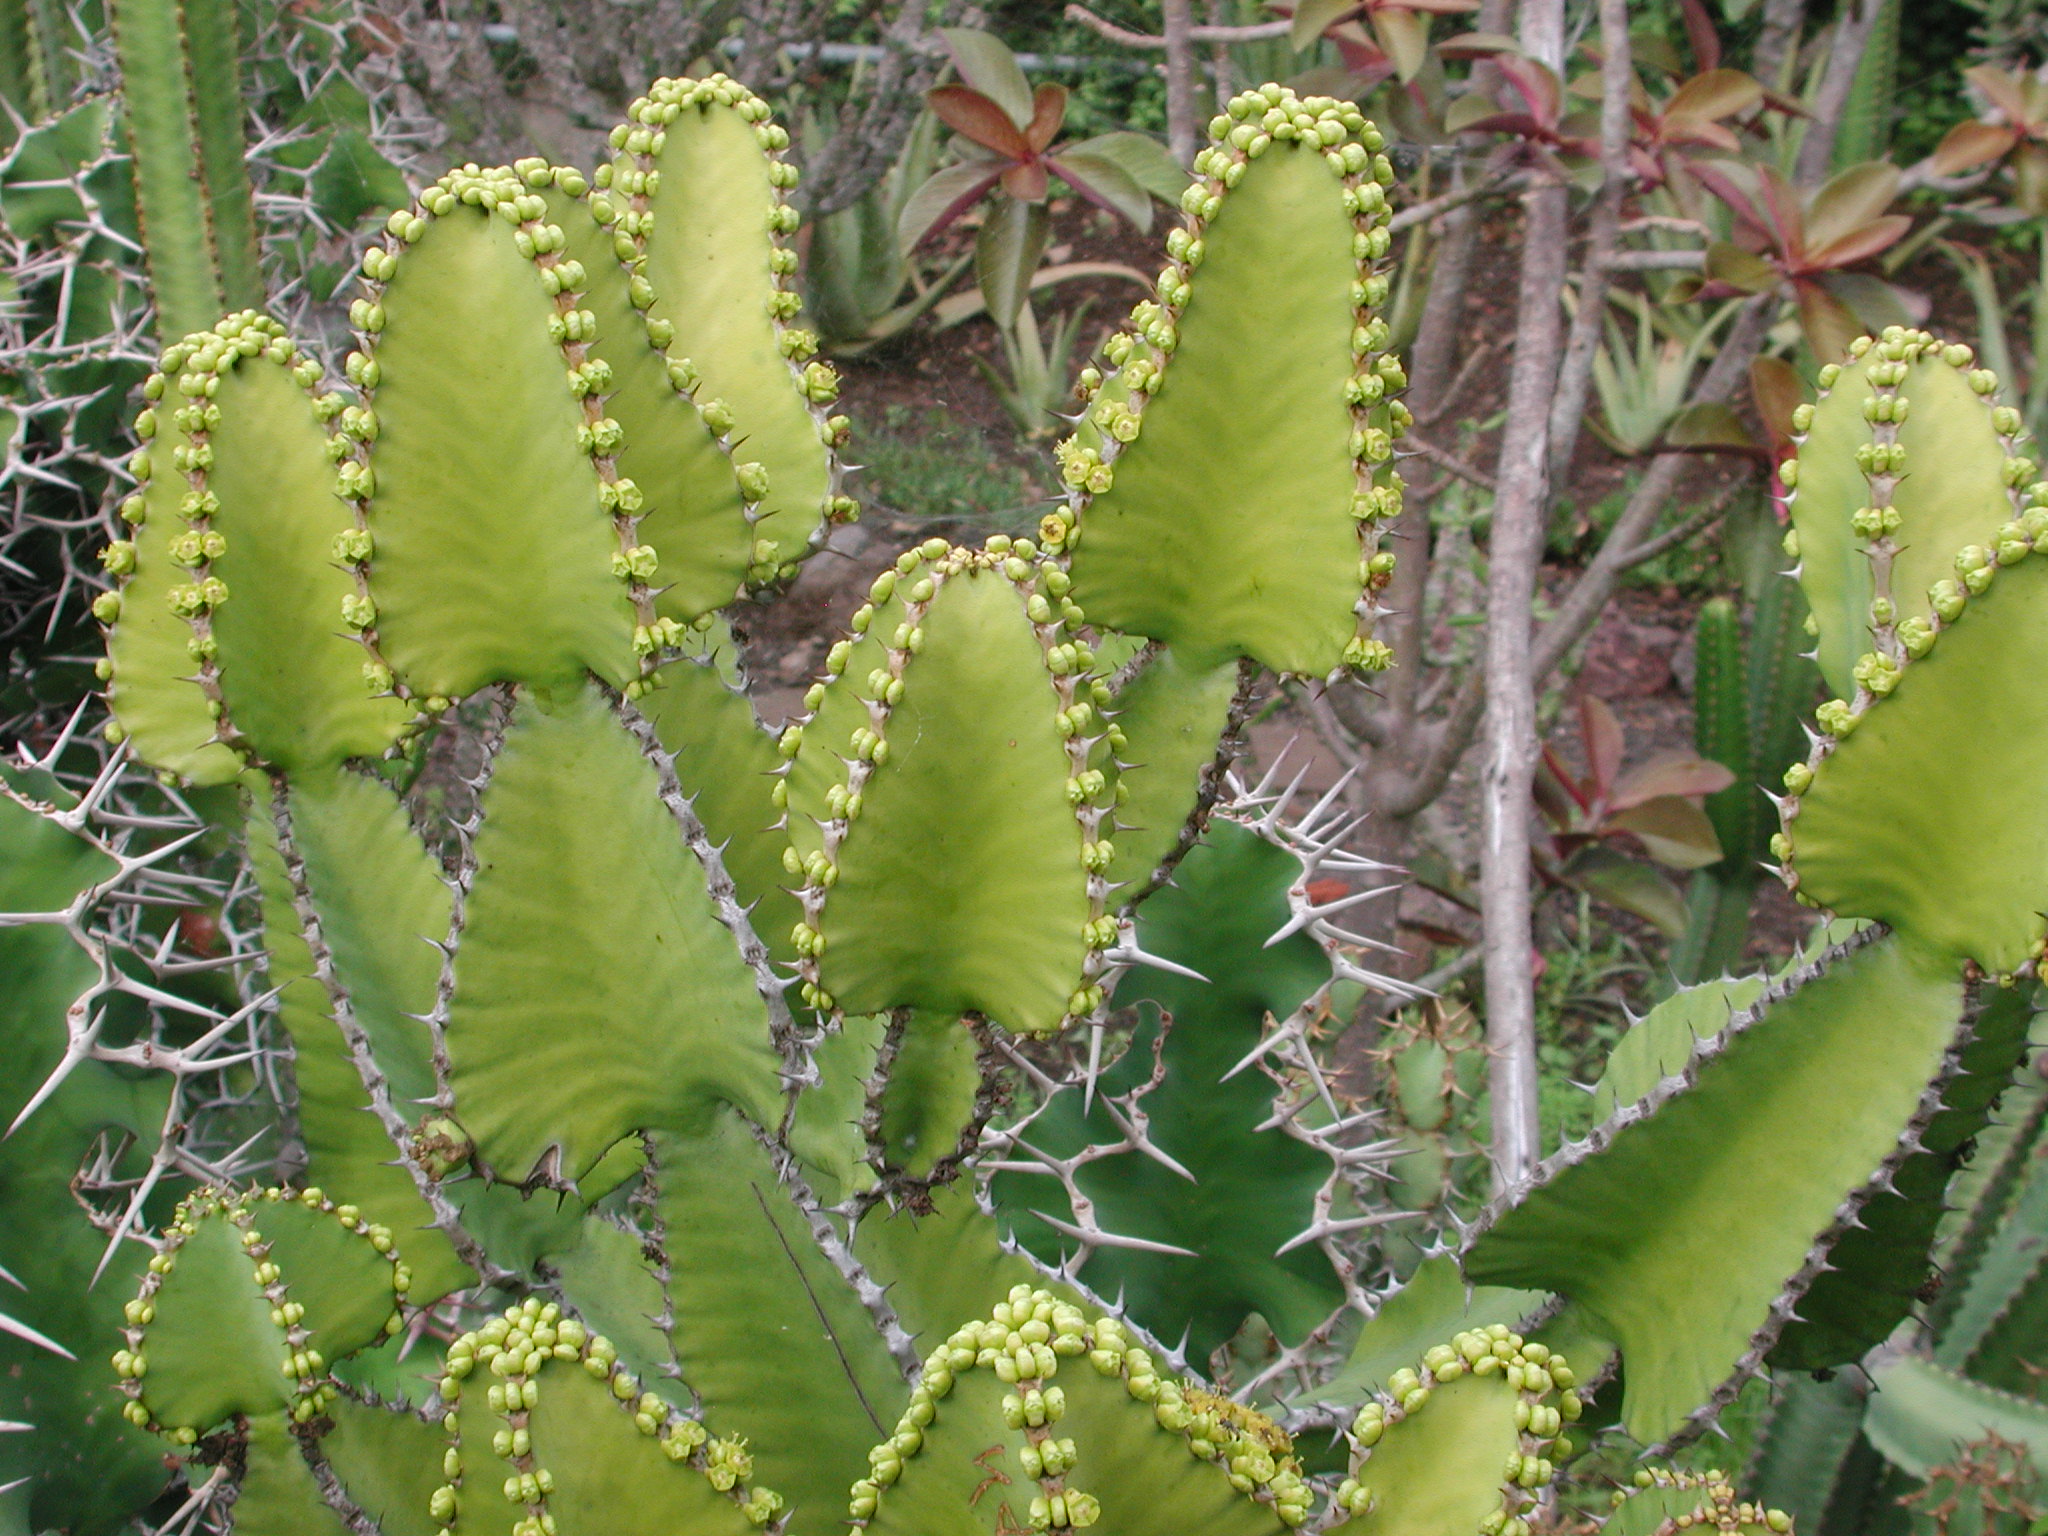 Euphorbia cactus